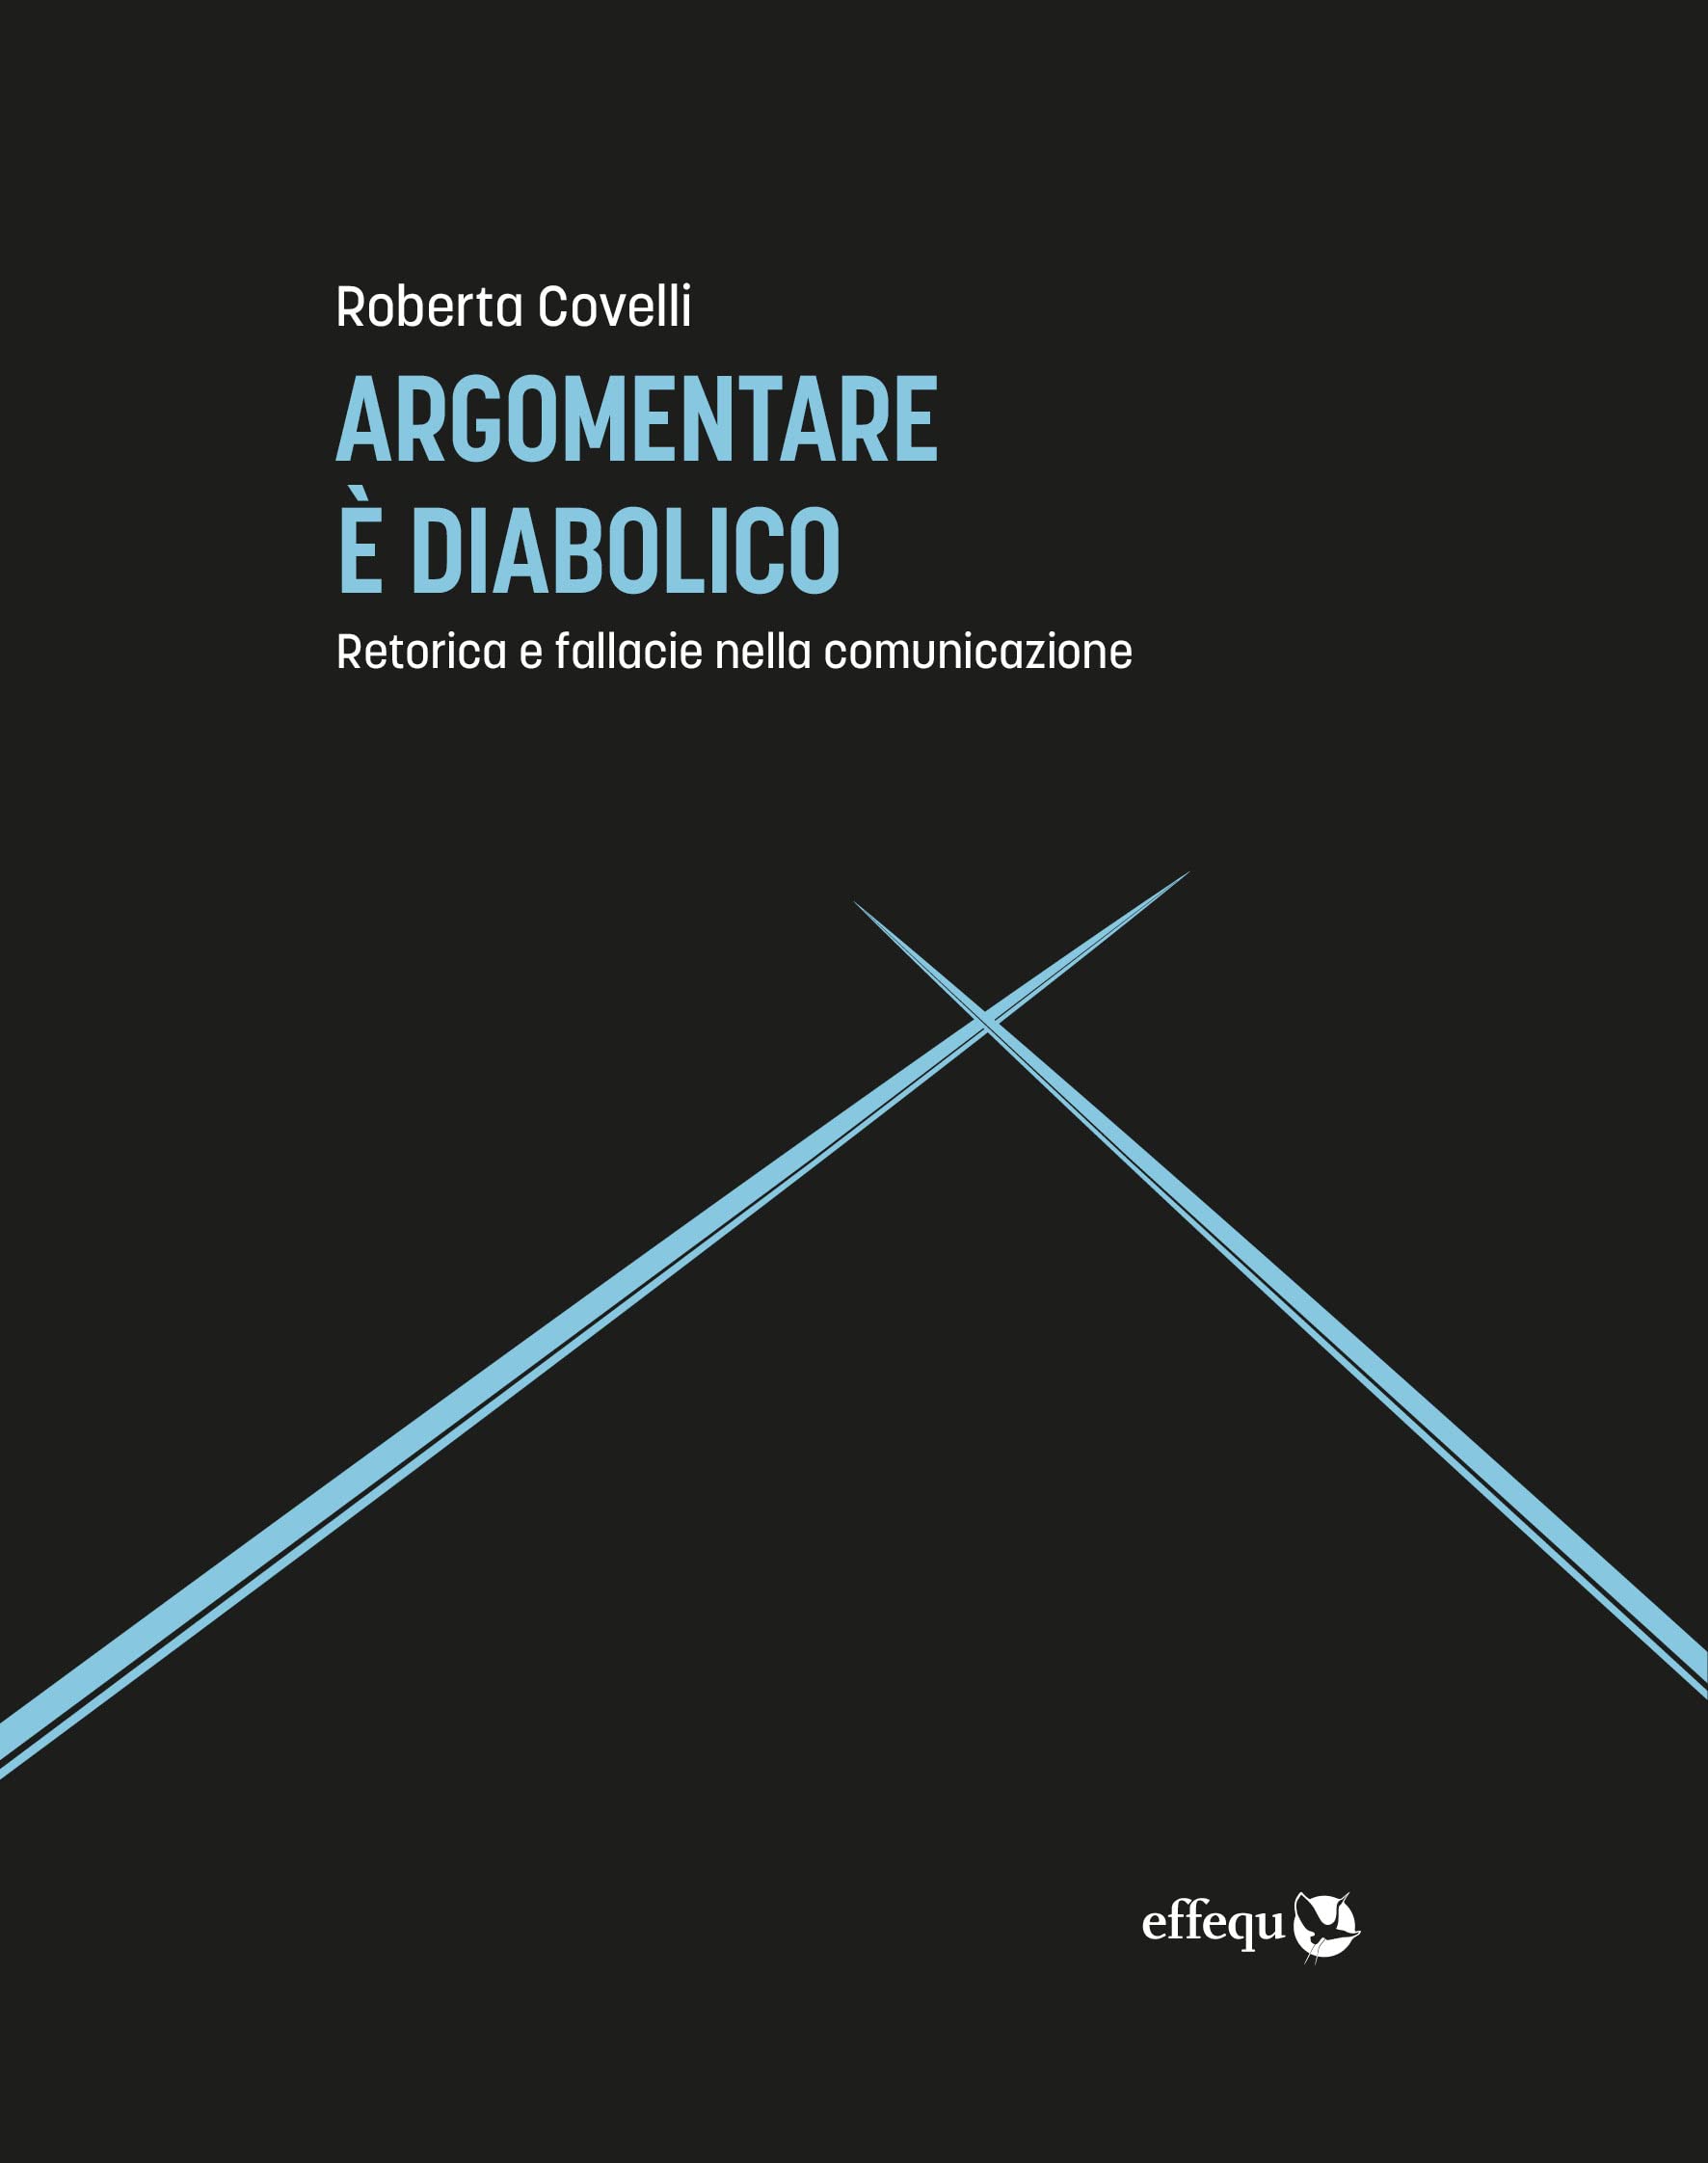 Roberta Covelli – Argomentare è diabolico. Retorica e fallacie nella comunicazione (Effequ, Roma 2022)